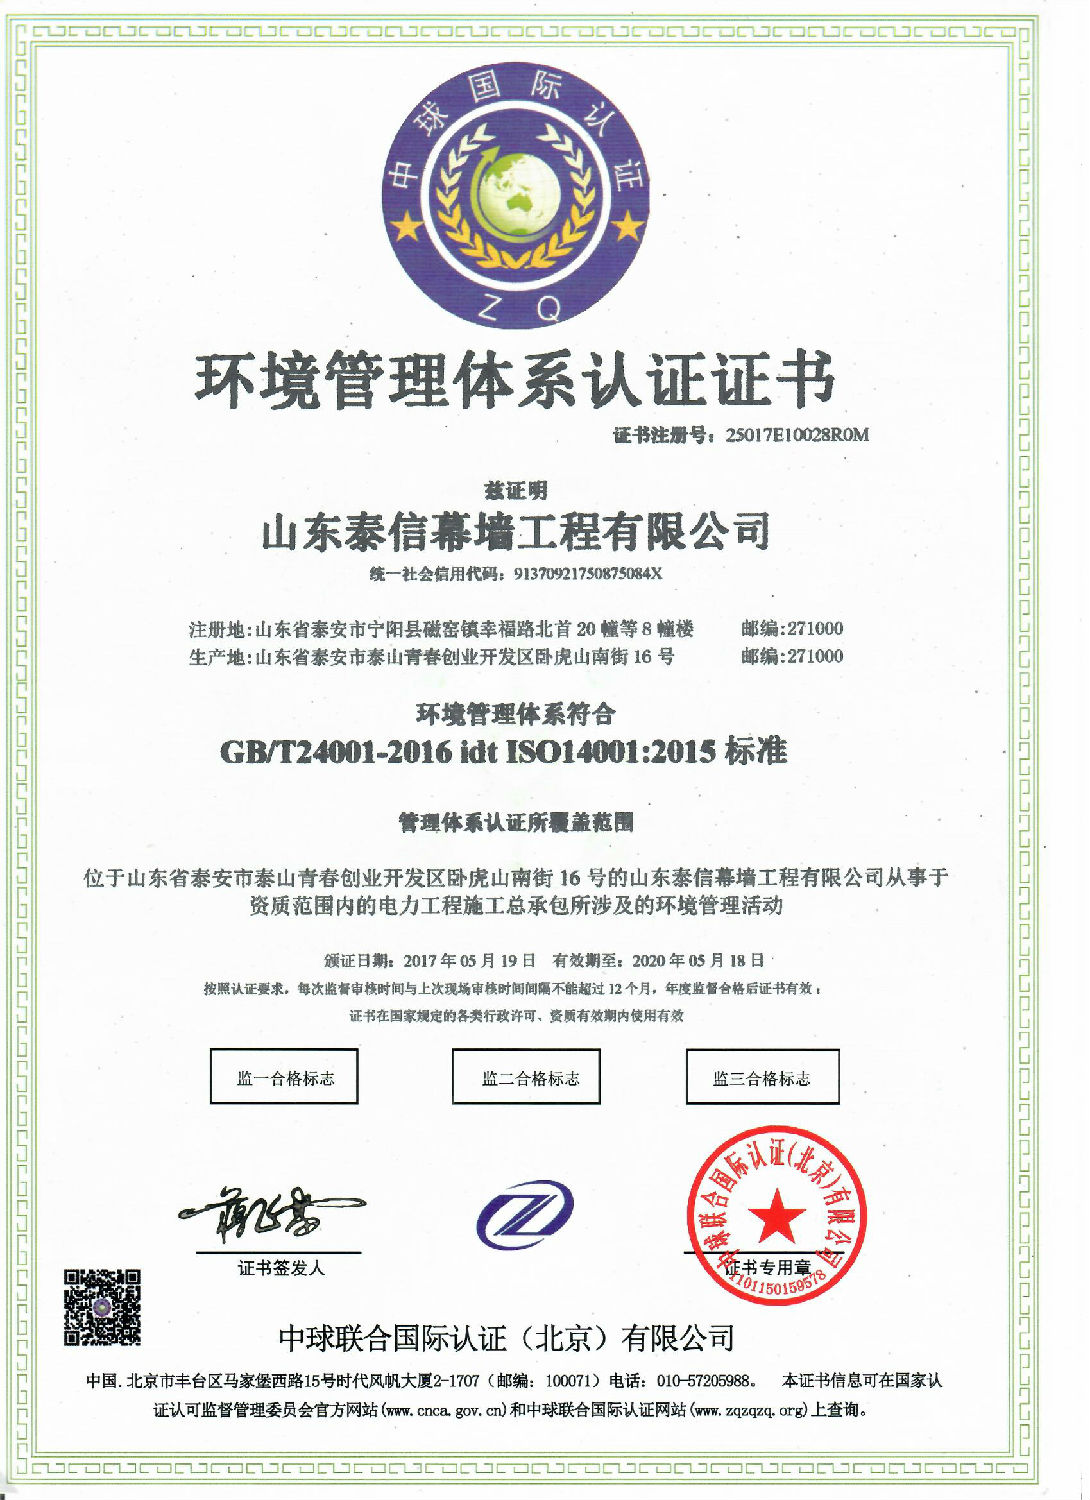 电力工程施工总承包环境管理体系认证证书